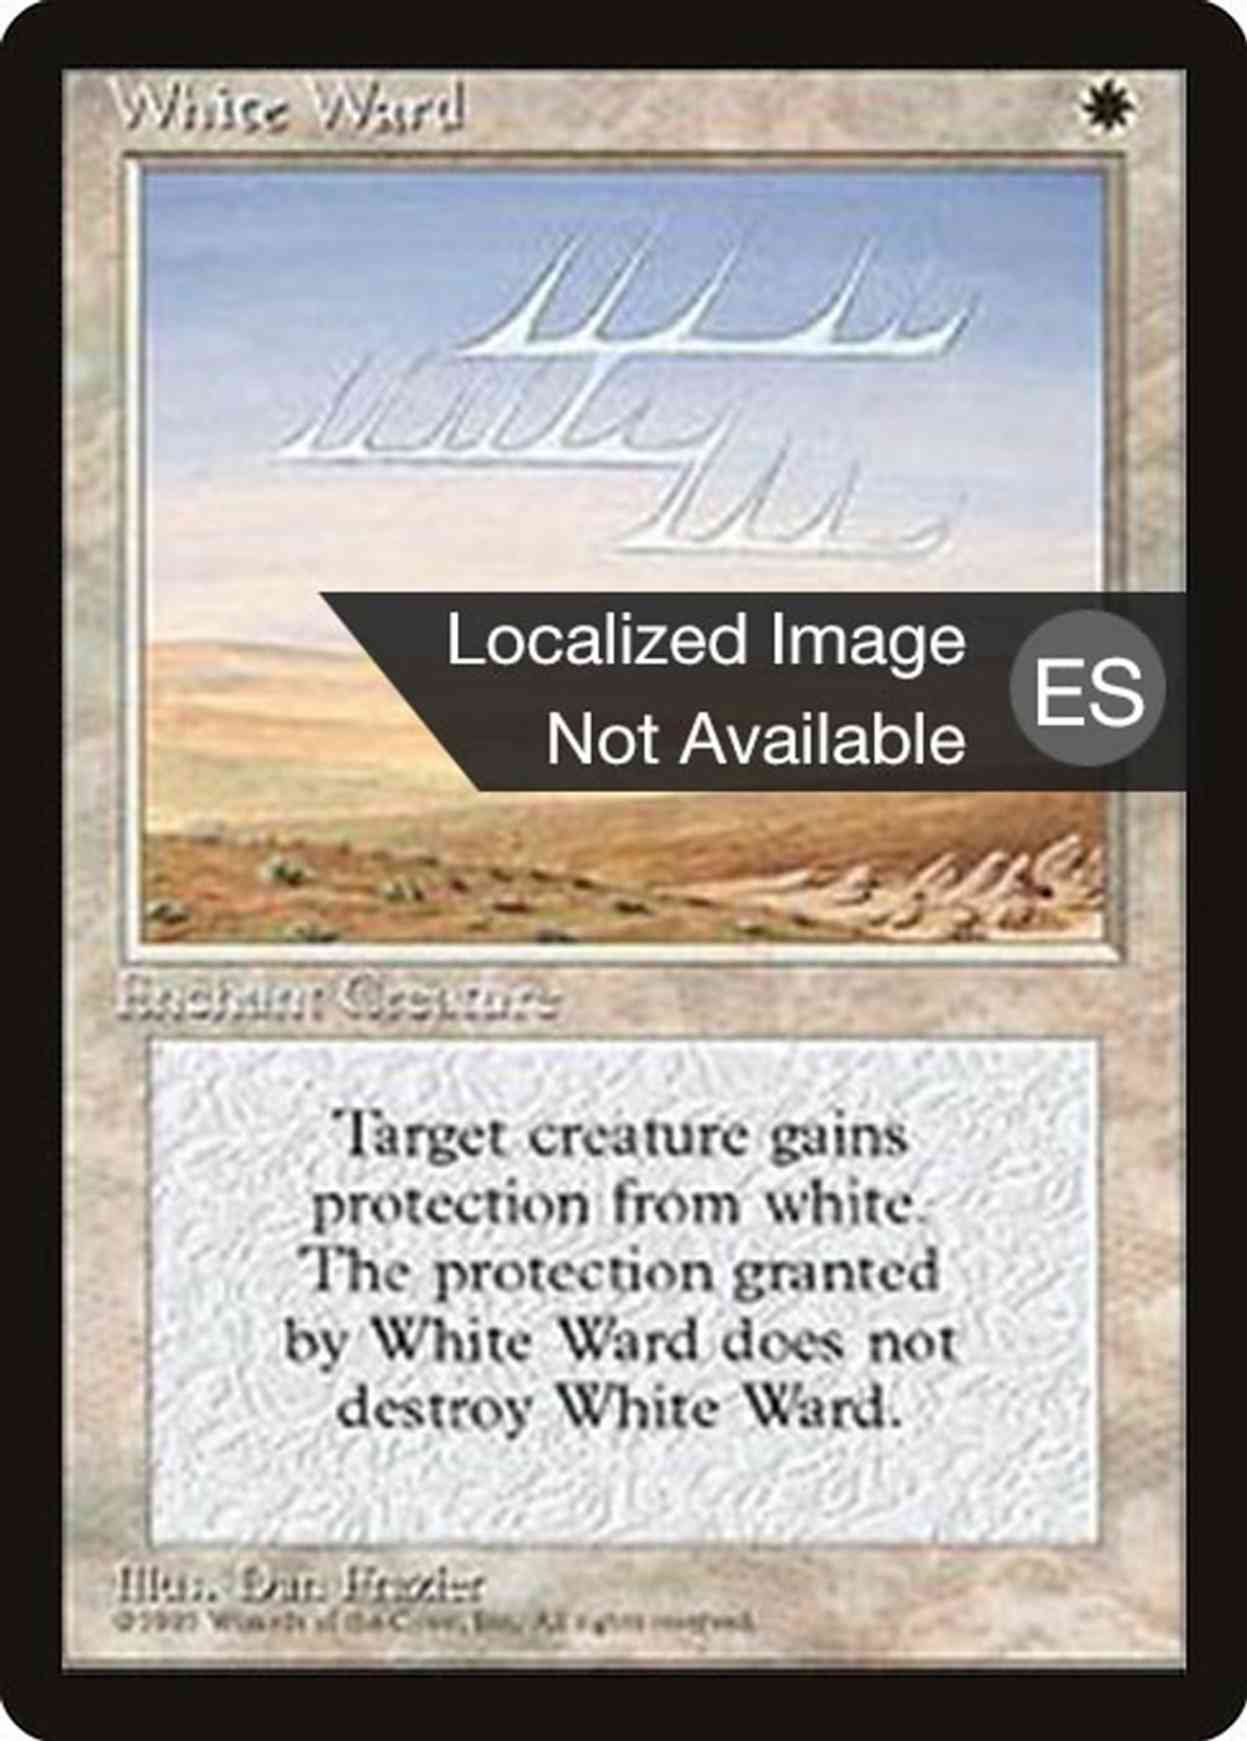 White Ward magic card front